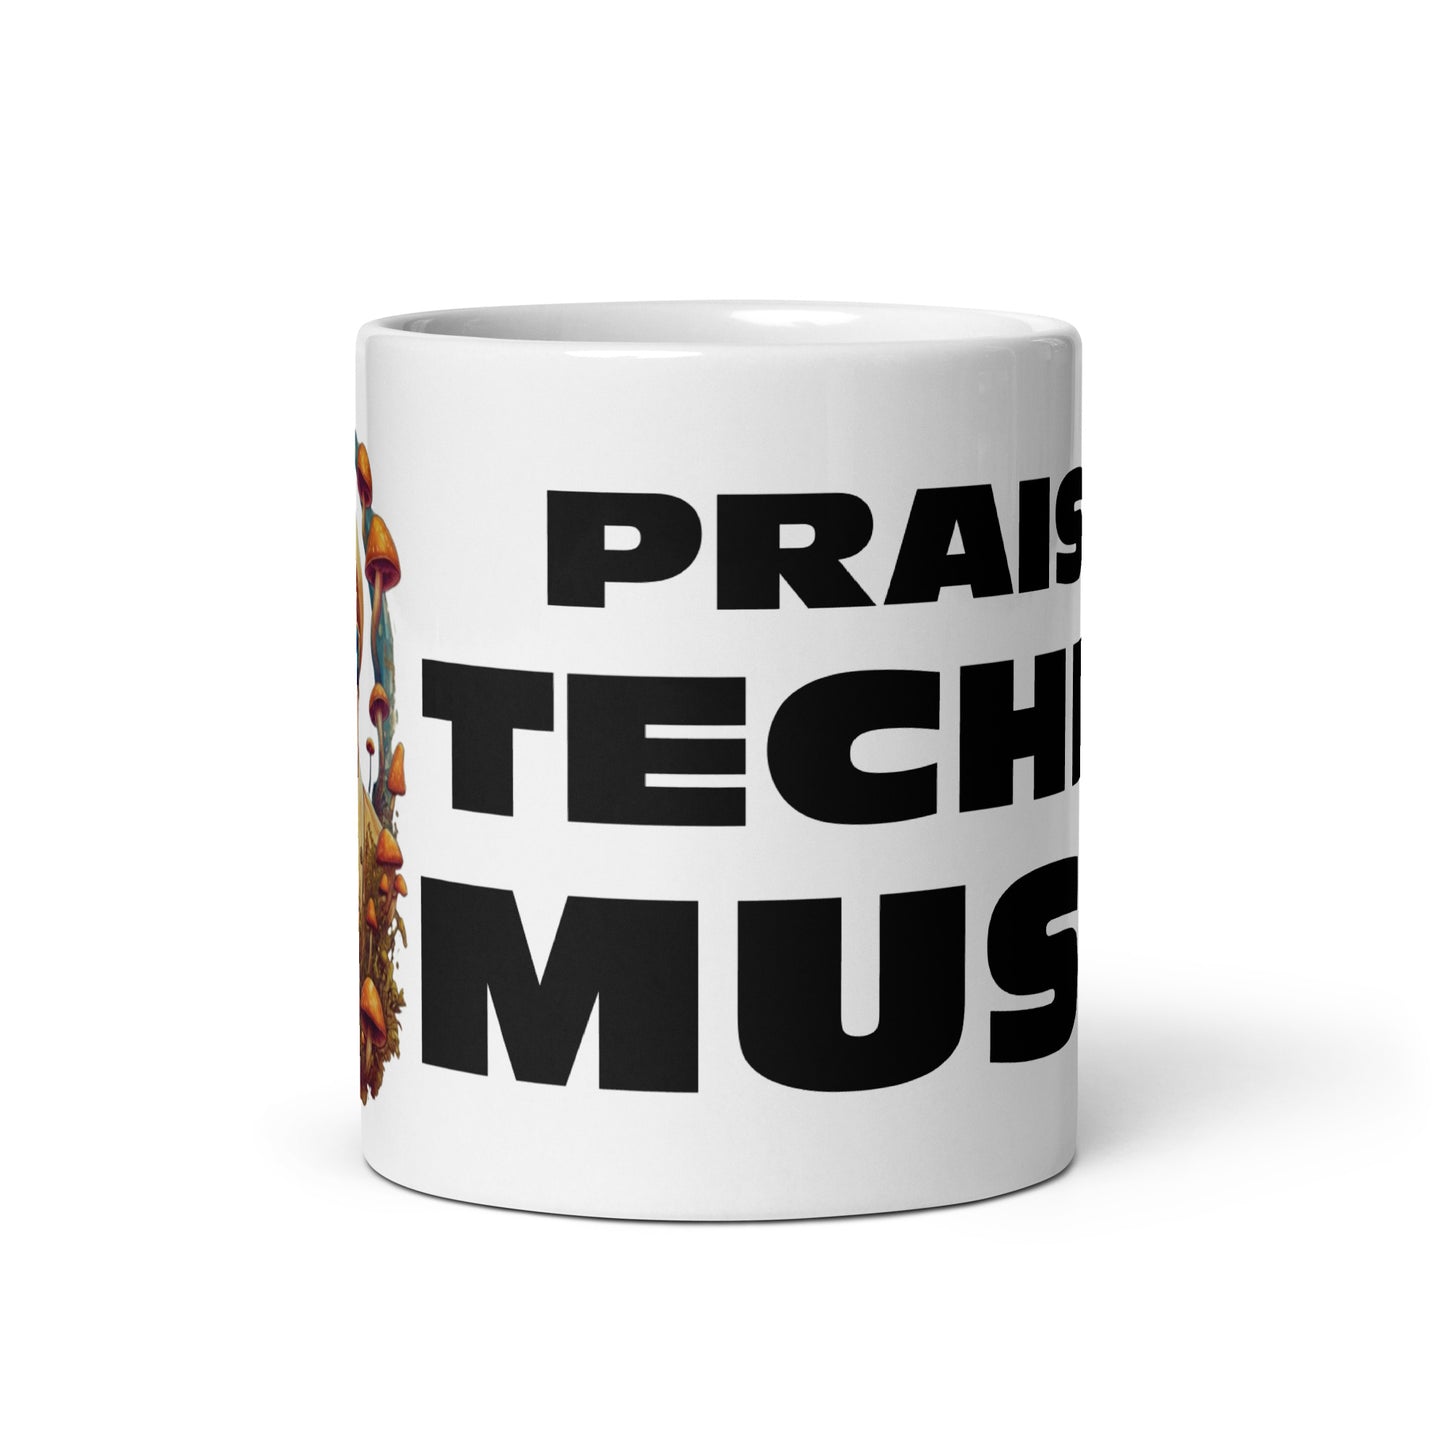 Praise Techno Music – Weiße glänzende Tasse